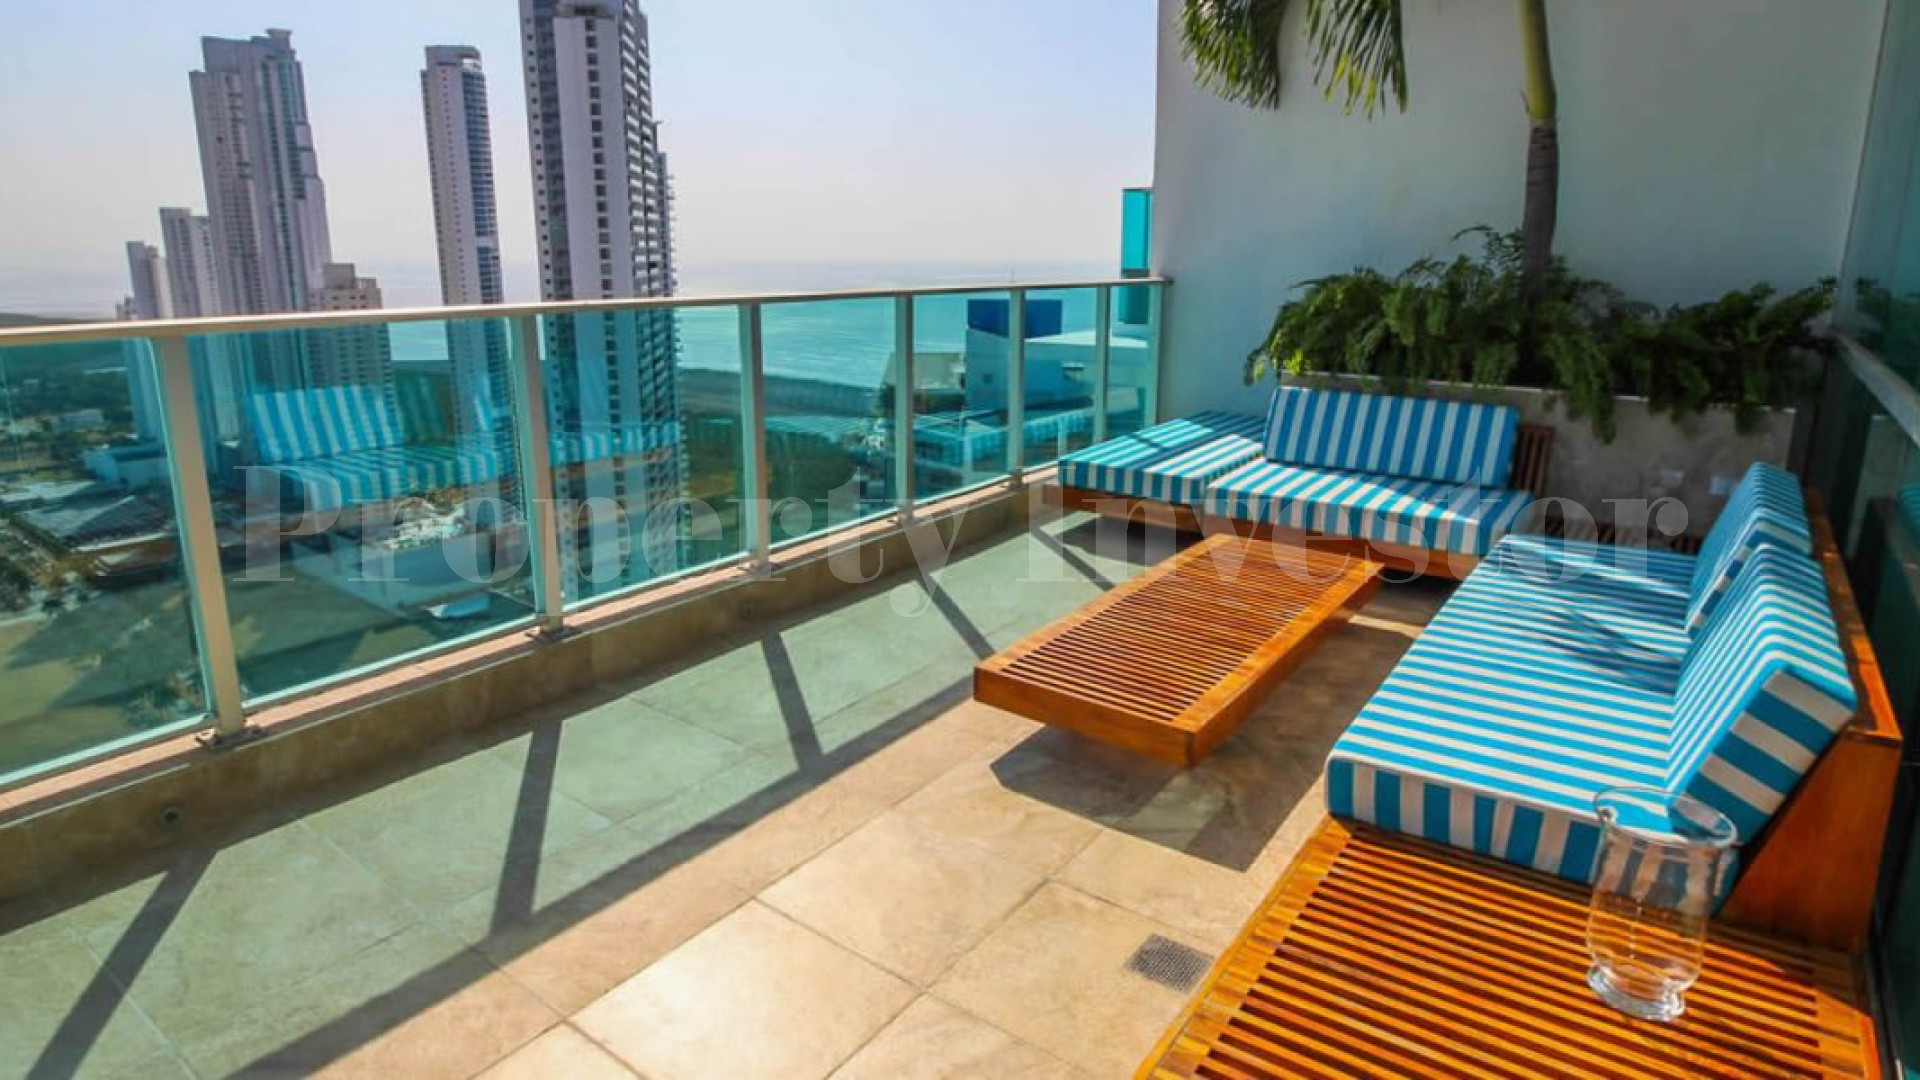 Впечатляющий 3-х уровневый пентхаус на 4 спальни с видом на океан с бассейном и террасой на крышк в Панама Сити, Панама